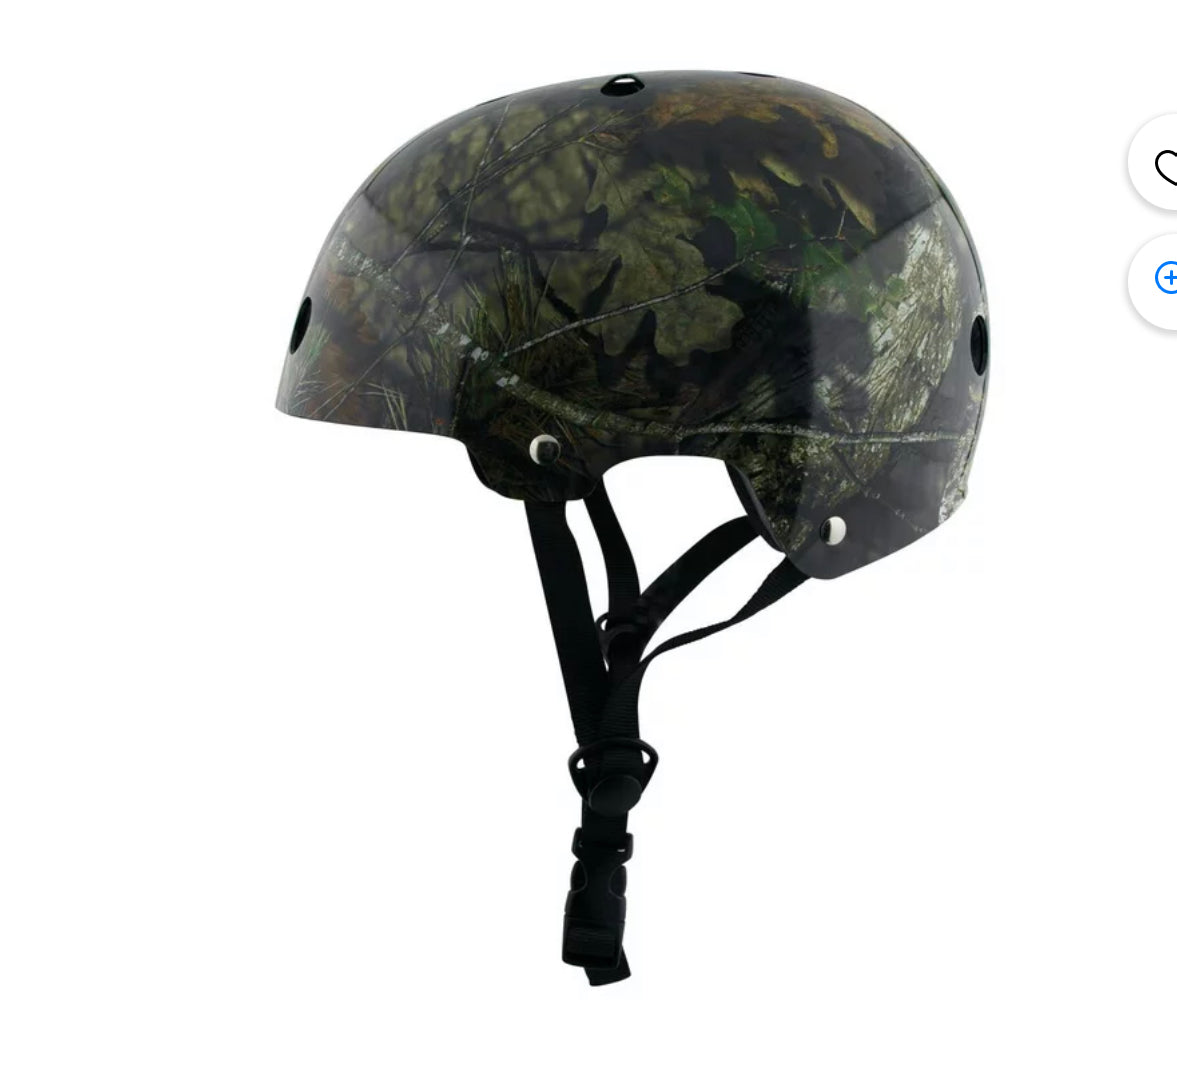 Mossy Oak Certified Action Sports Helmet 8+ Years Old